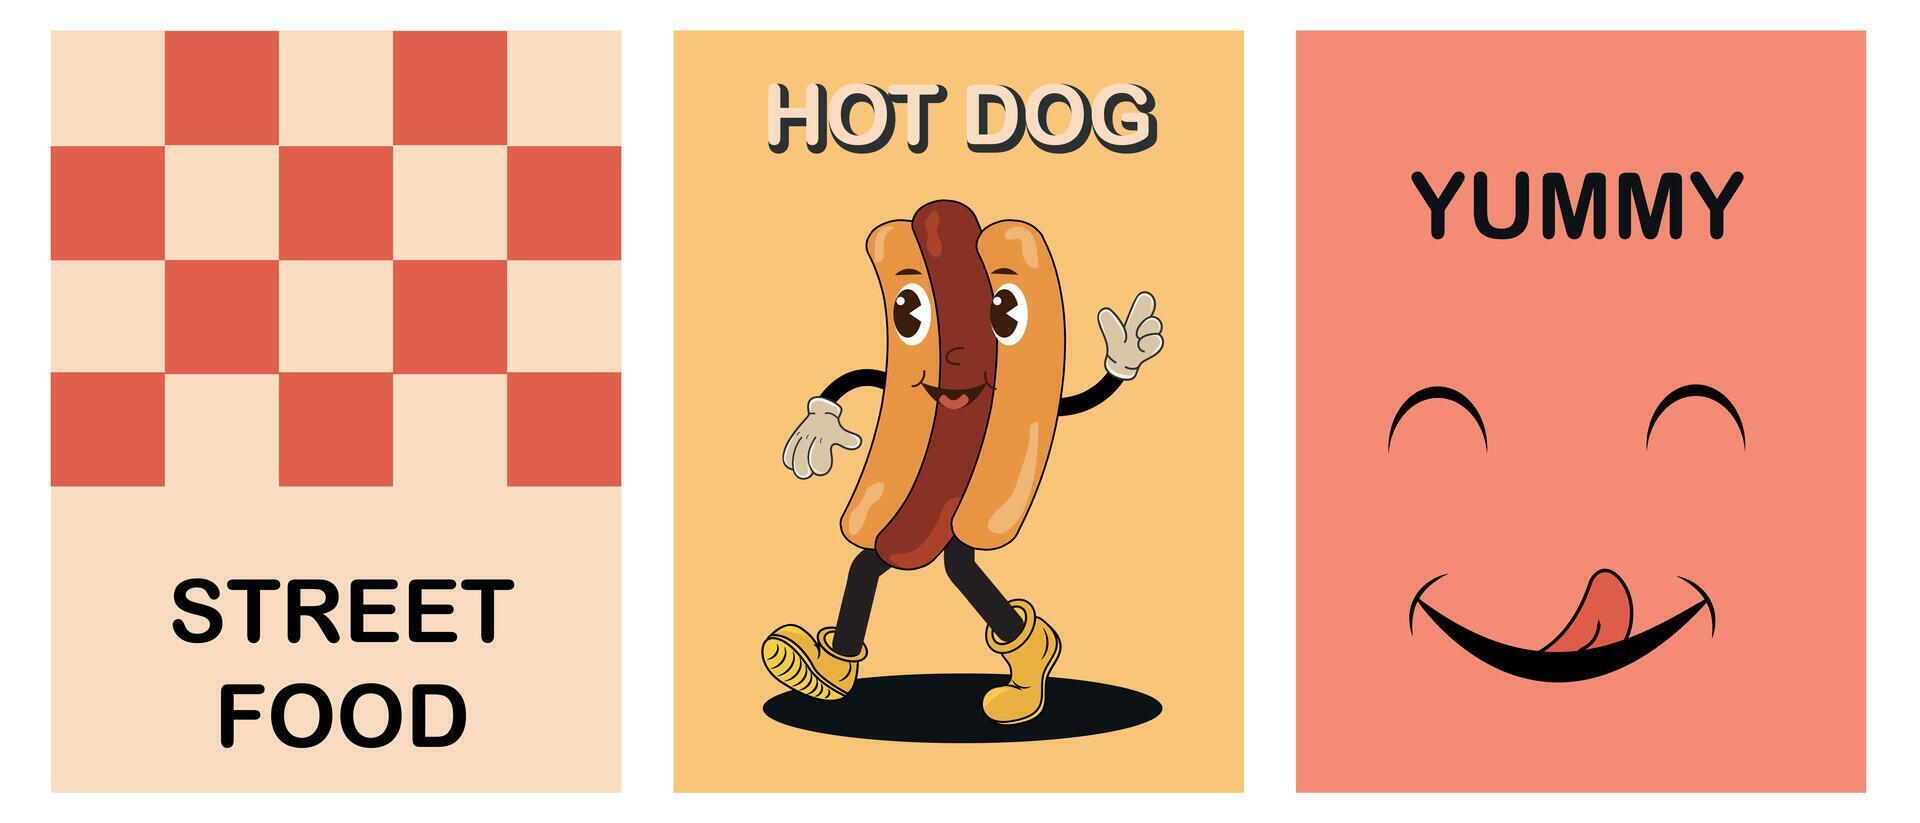 reeks van retro tekenfilm grappig posters met schattig heet hond karakter. snel voedsel concept. wijnoogst straat illustratie van heet hond mascotte voor cafetaria. nostalgie voor de jaren 60, jaren 70, jaren 80. vector